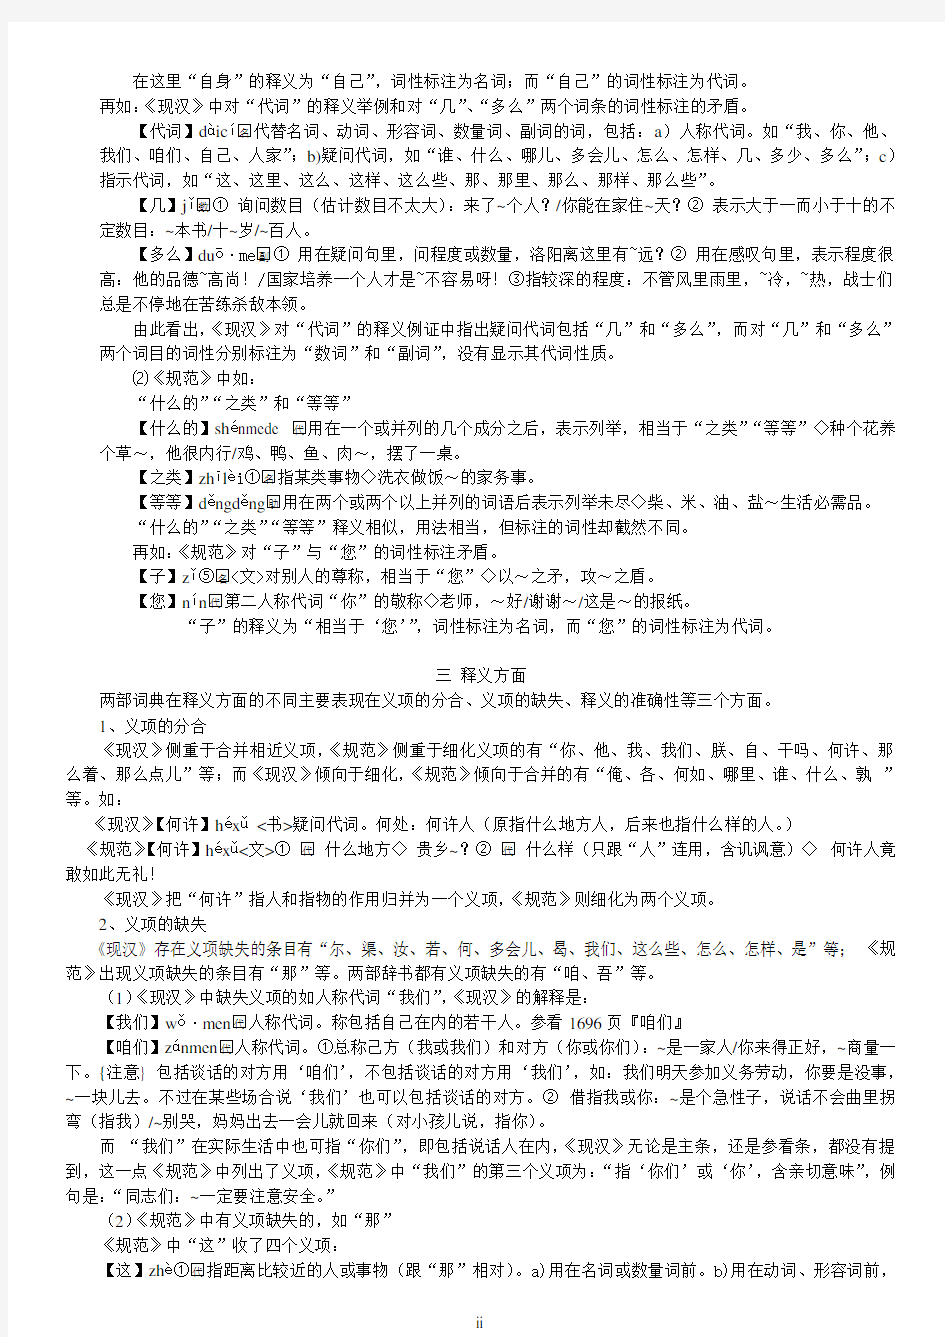 现代汉语词典和现代汉语规范词典中代词条目比较分析